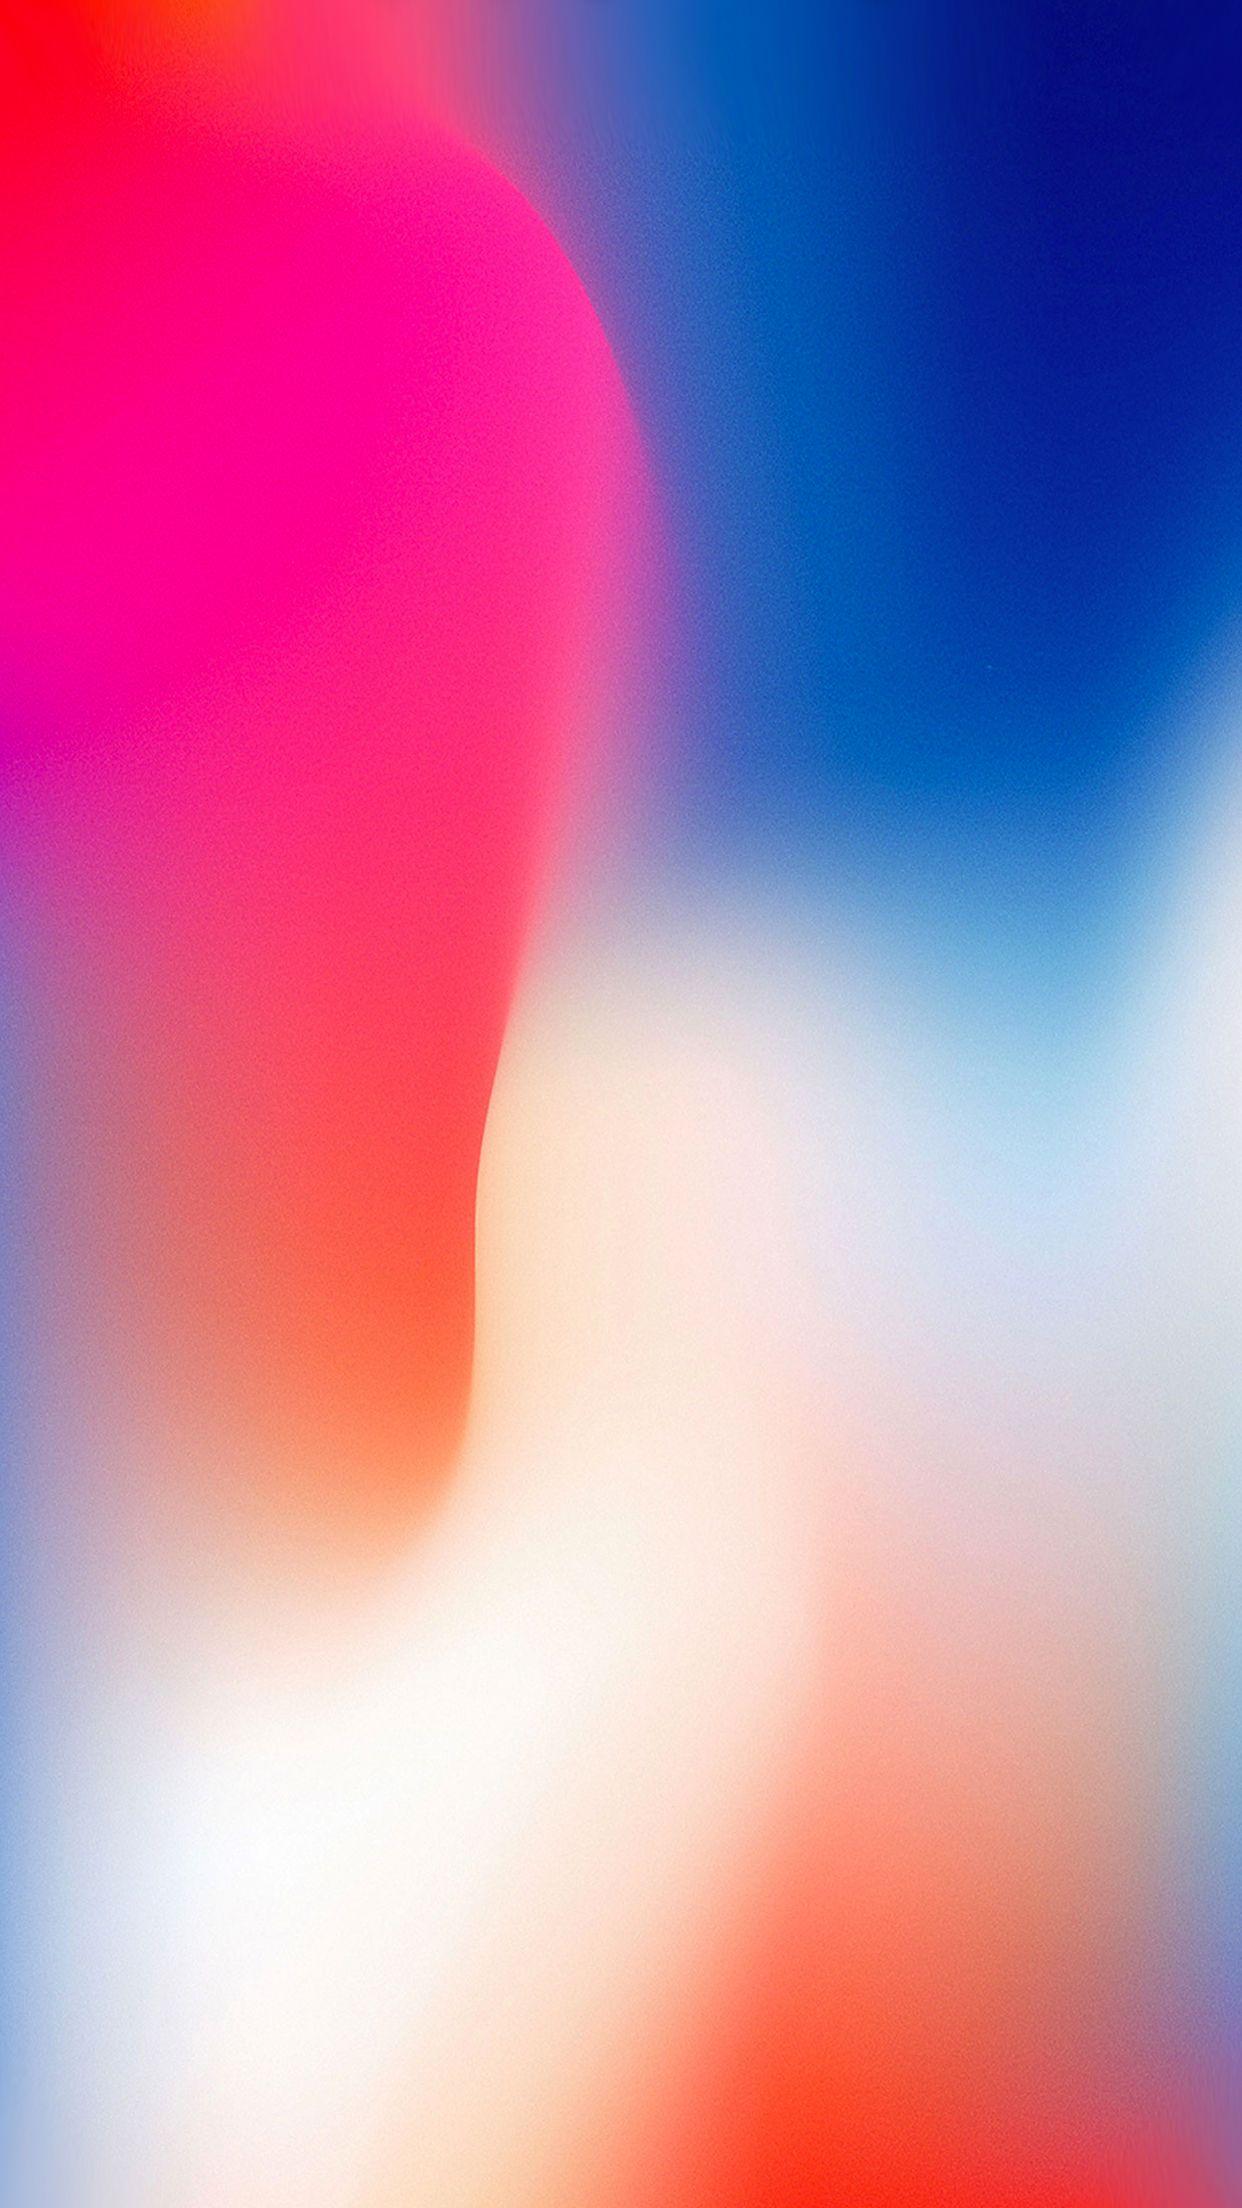 IPhone X Full HD Wallpaper